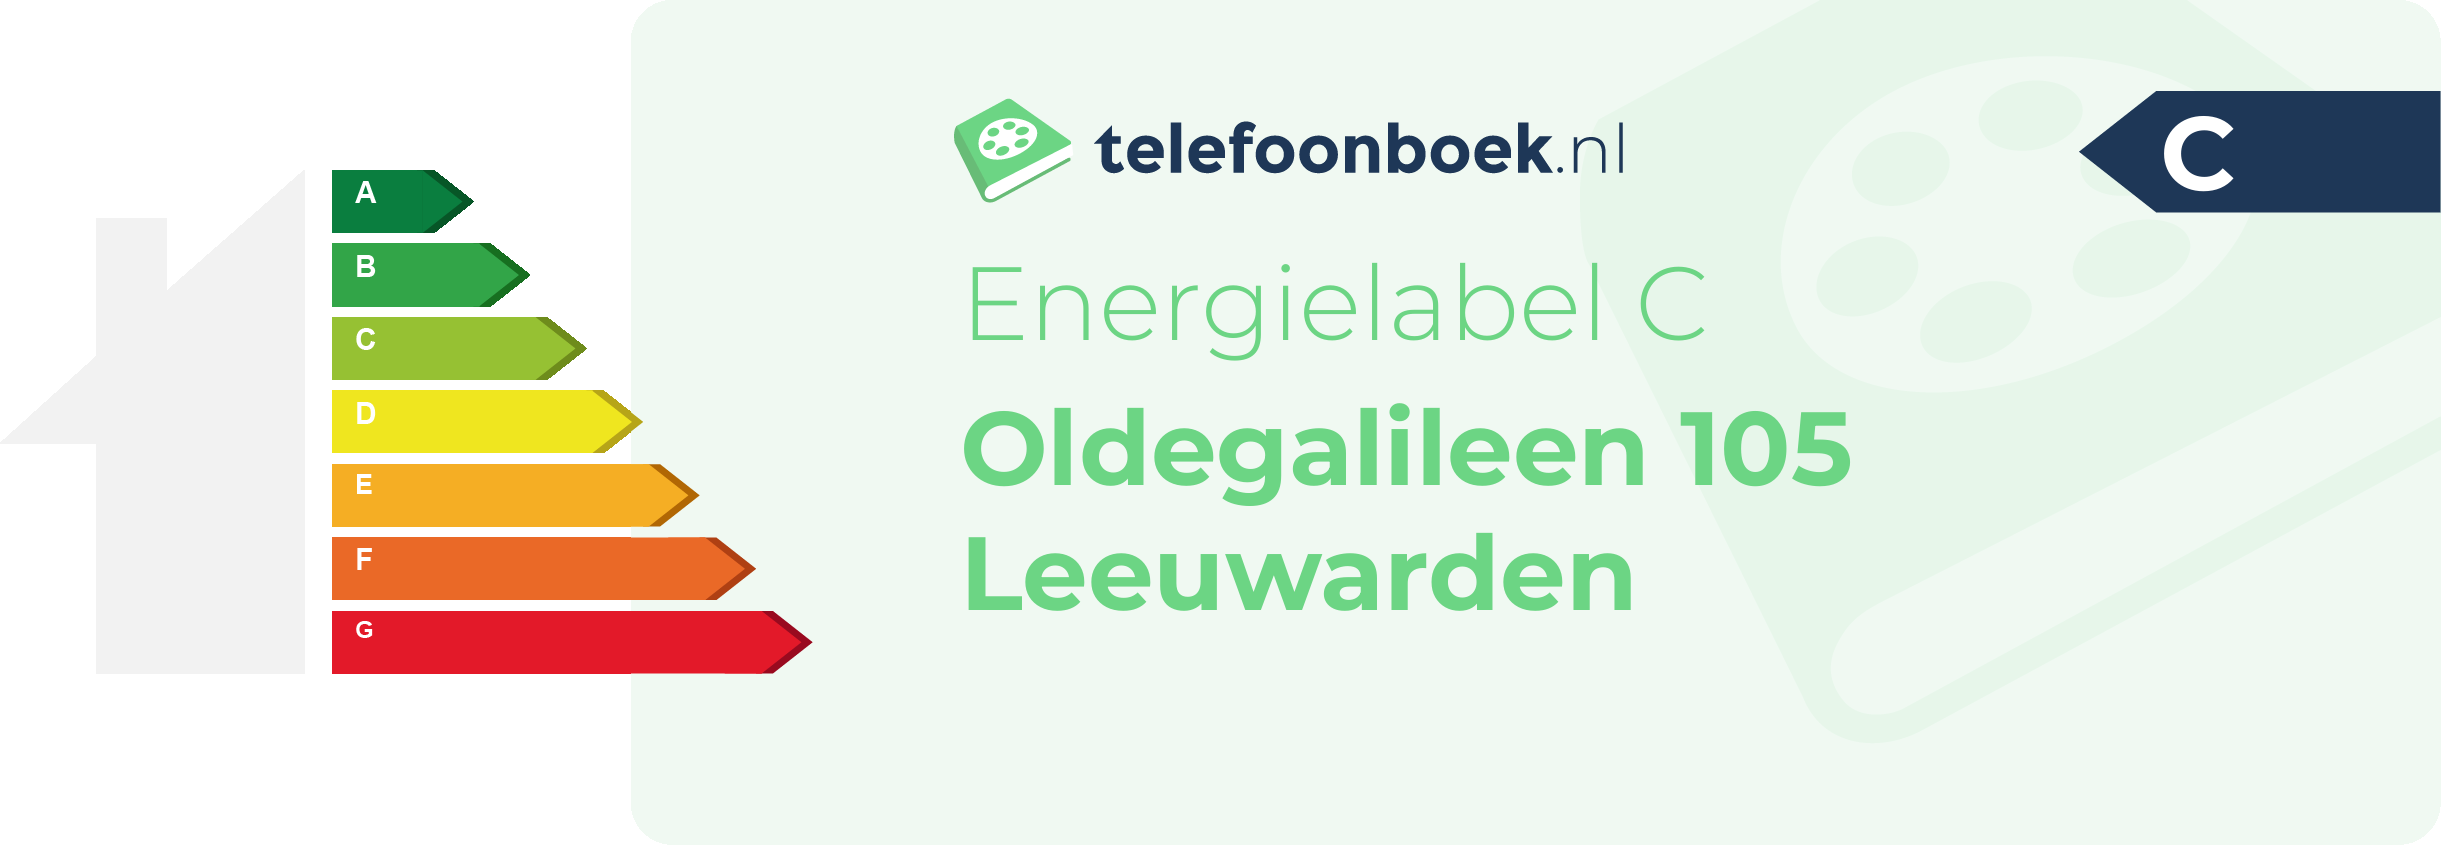 Energielabel Oldegalileen 105 Leeuwarden